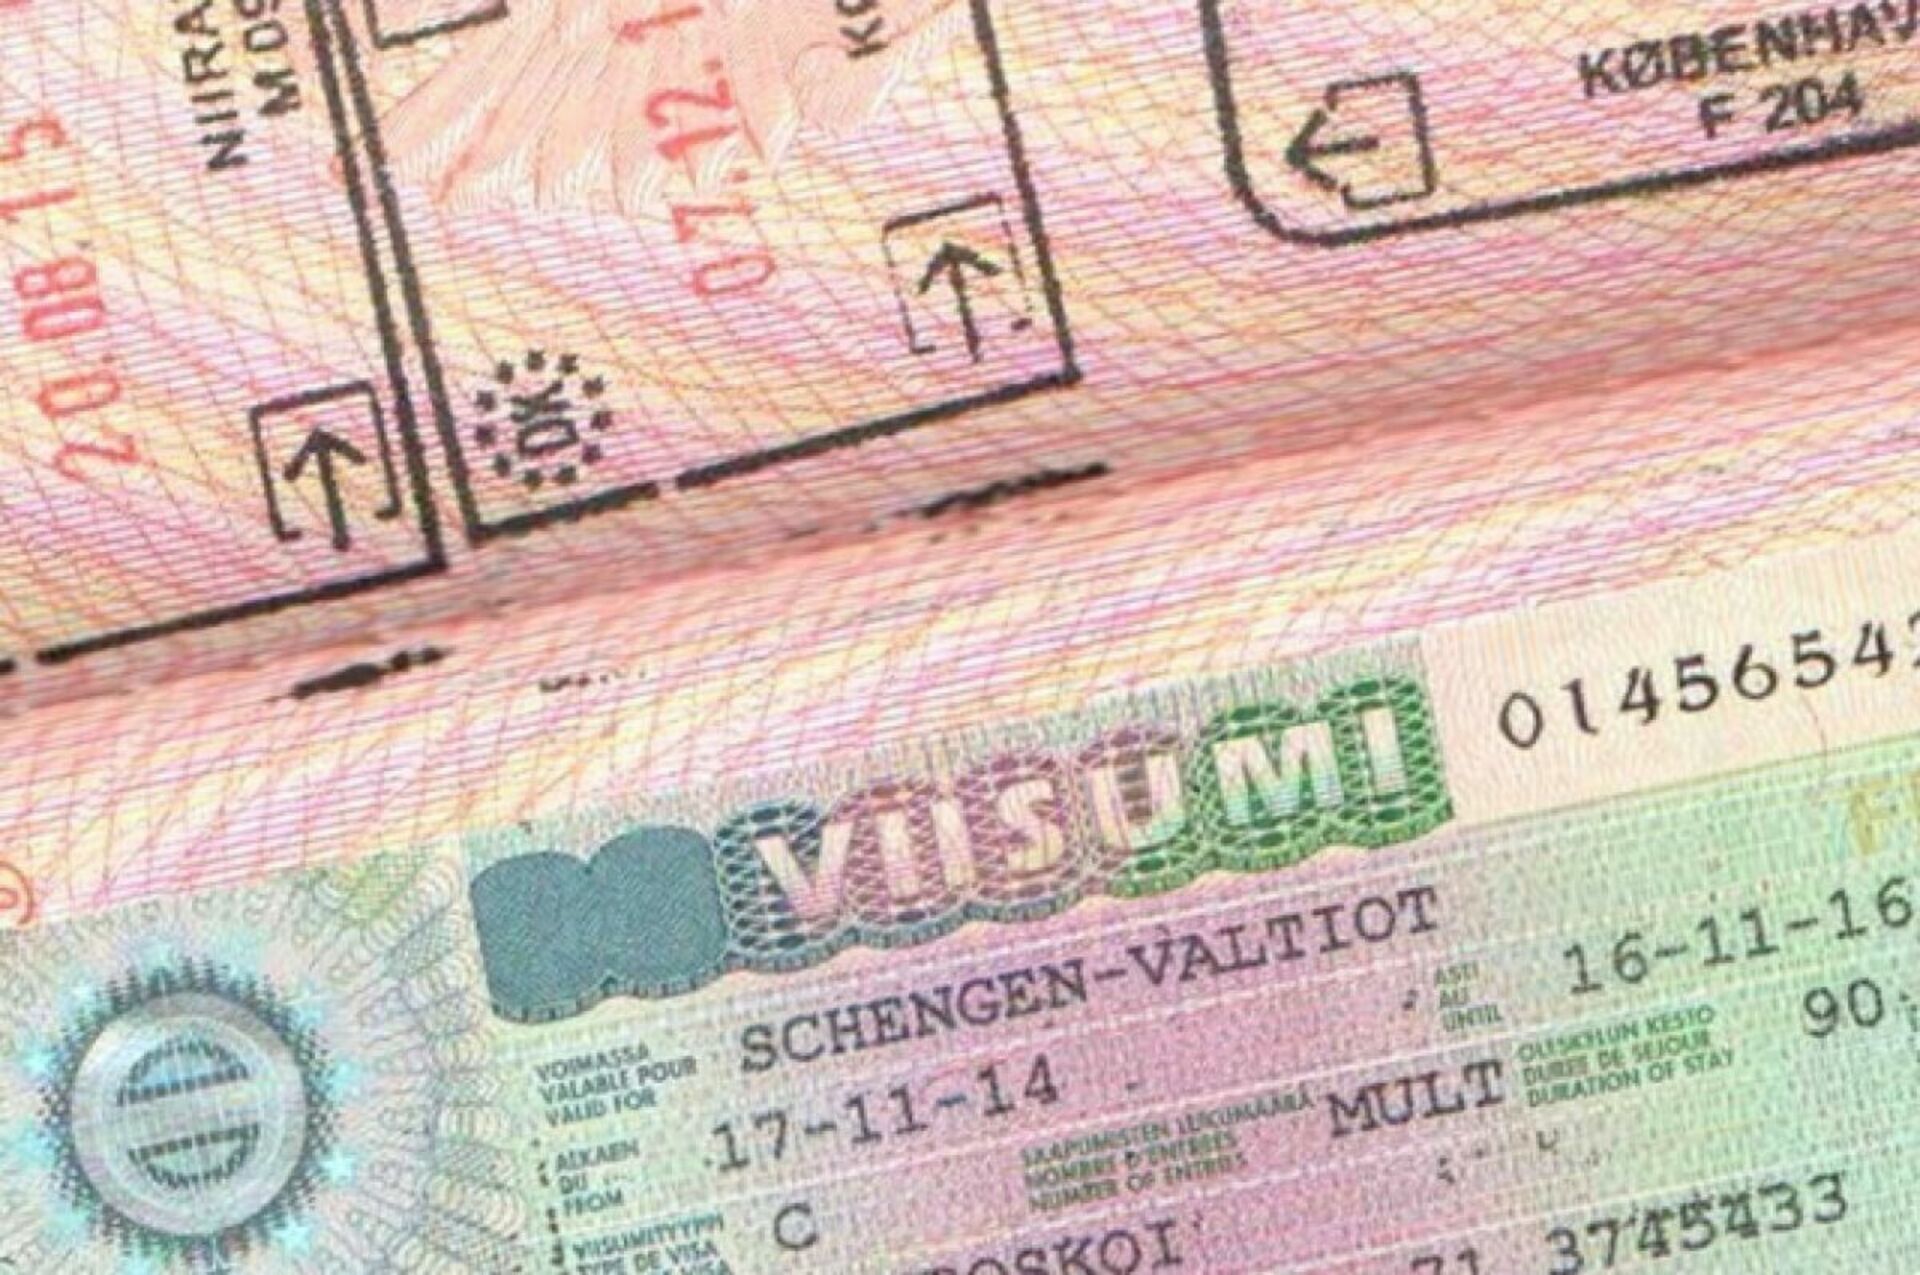 Страны выдающие шенгенские визы. Шенген ЕС. Шенгенская виза. Виза Евросоюза. Немецкая виза.